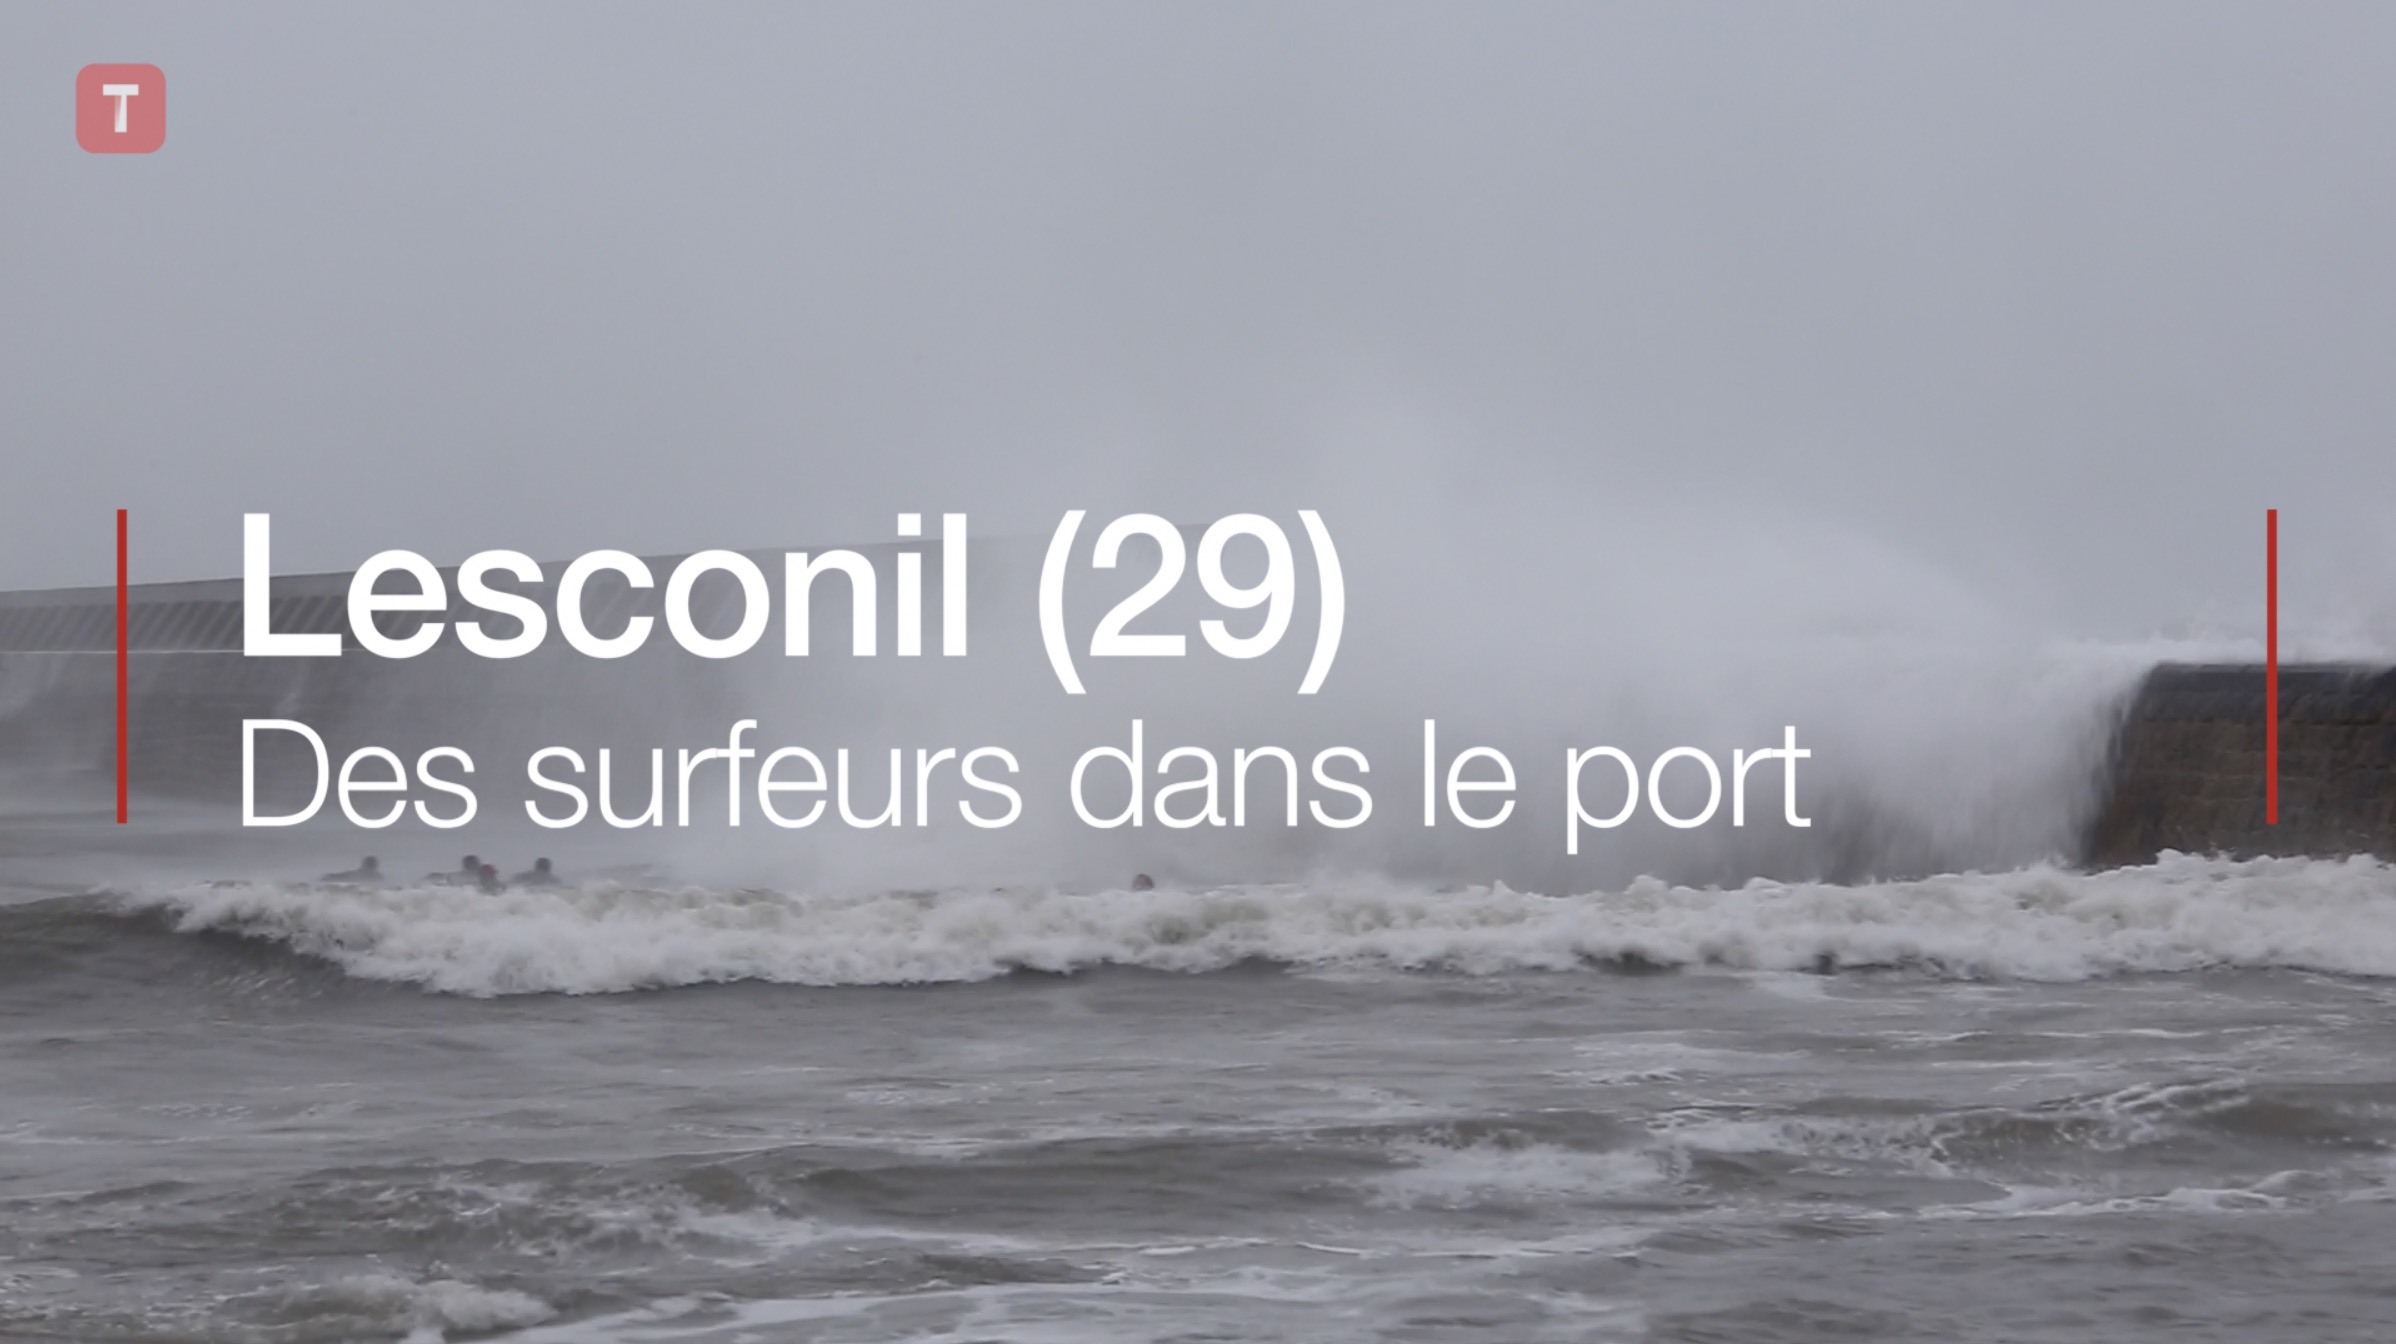 Lesconil (29). Des surfeurs dans le port (Le Télégramme)